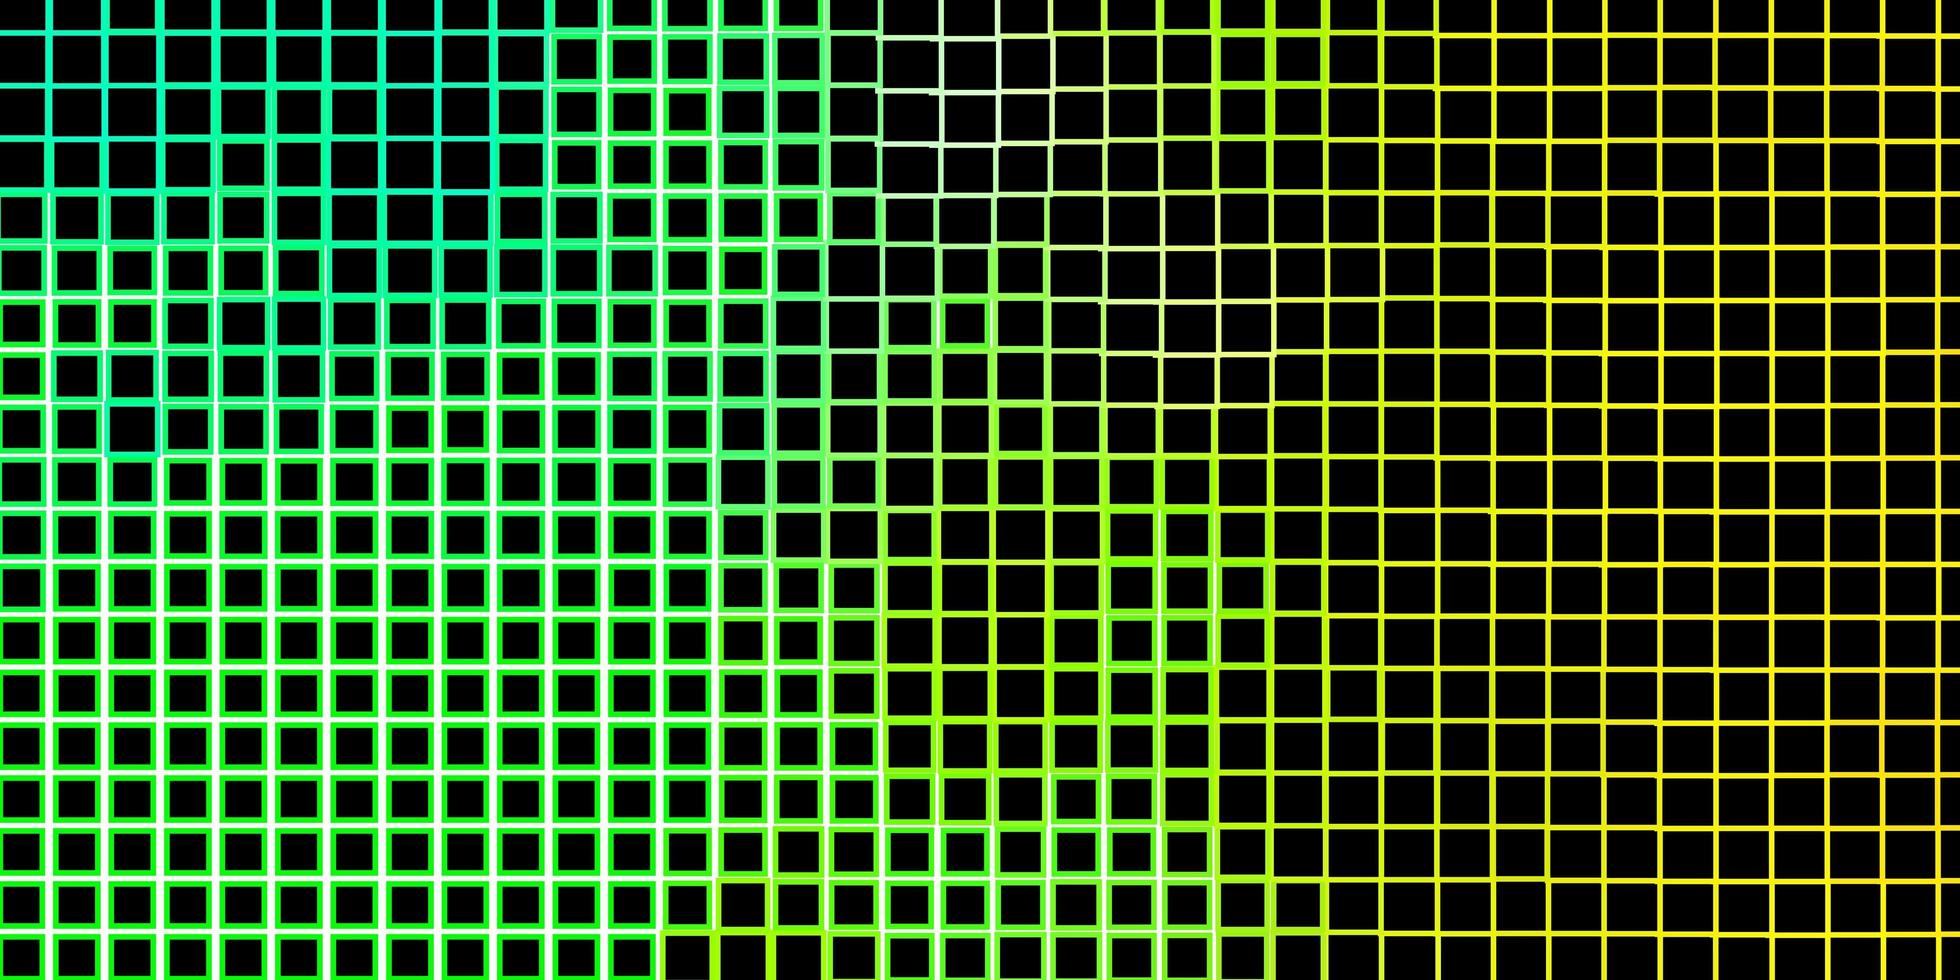 modèle vectoriel vert clair, jaune avec des rectangles.